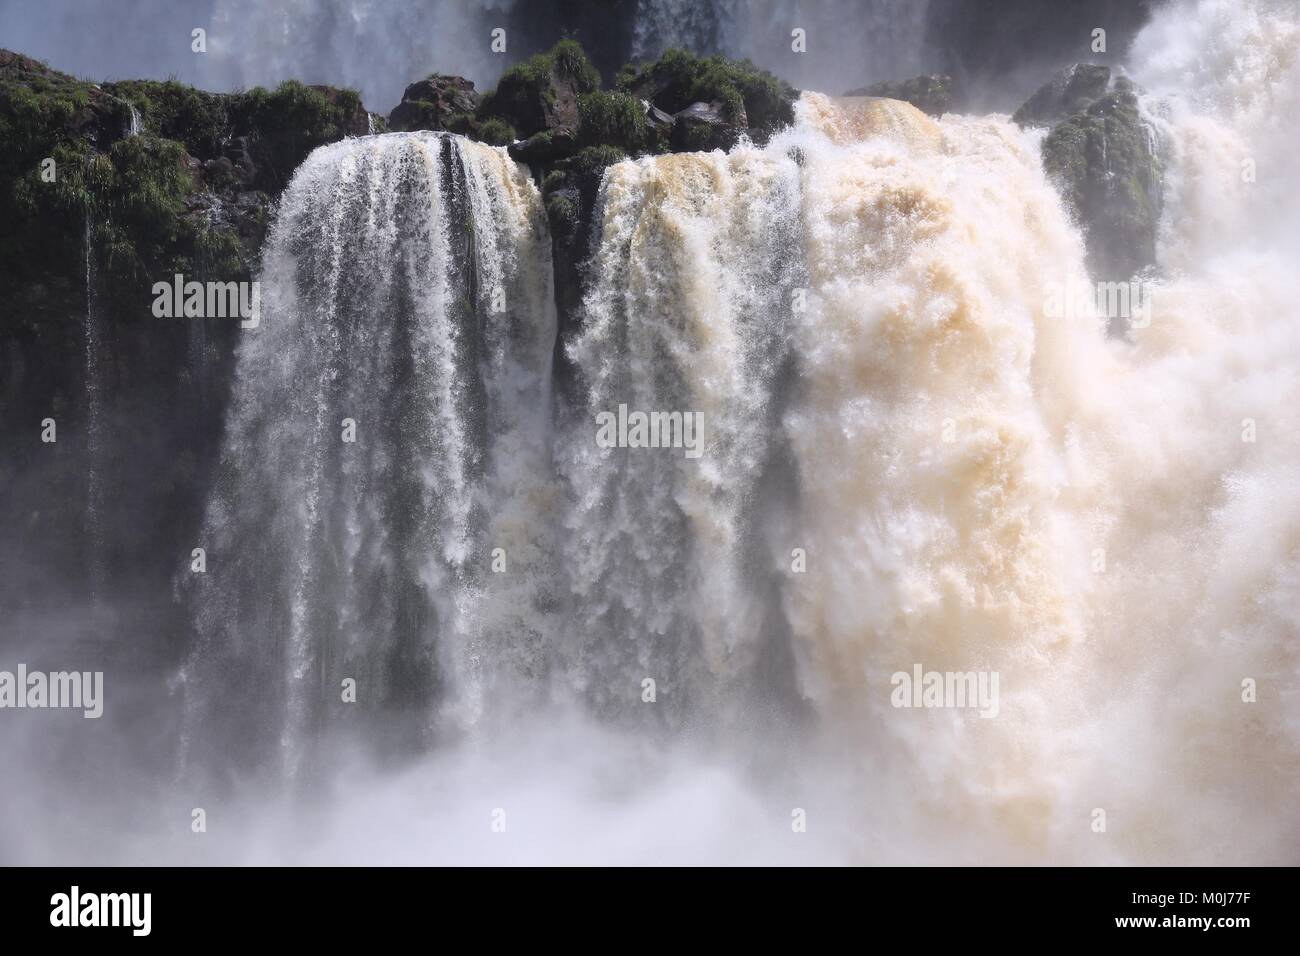 Chutes d'Iguazu - sur le Brésil et l'Argentine frontière. Parc national et site du patrimoine mondial de l'UNESCO. Vue du côté argentin. Banque D'Images